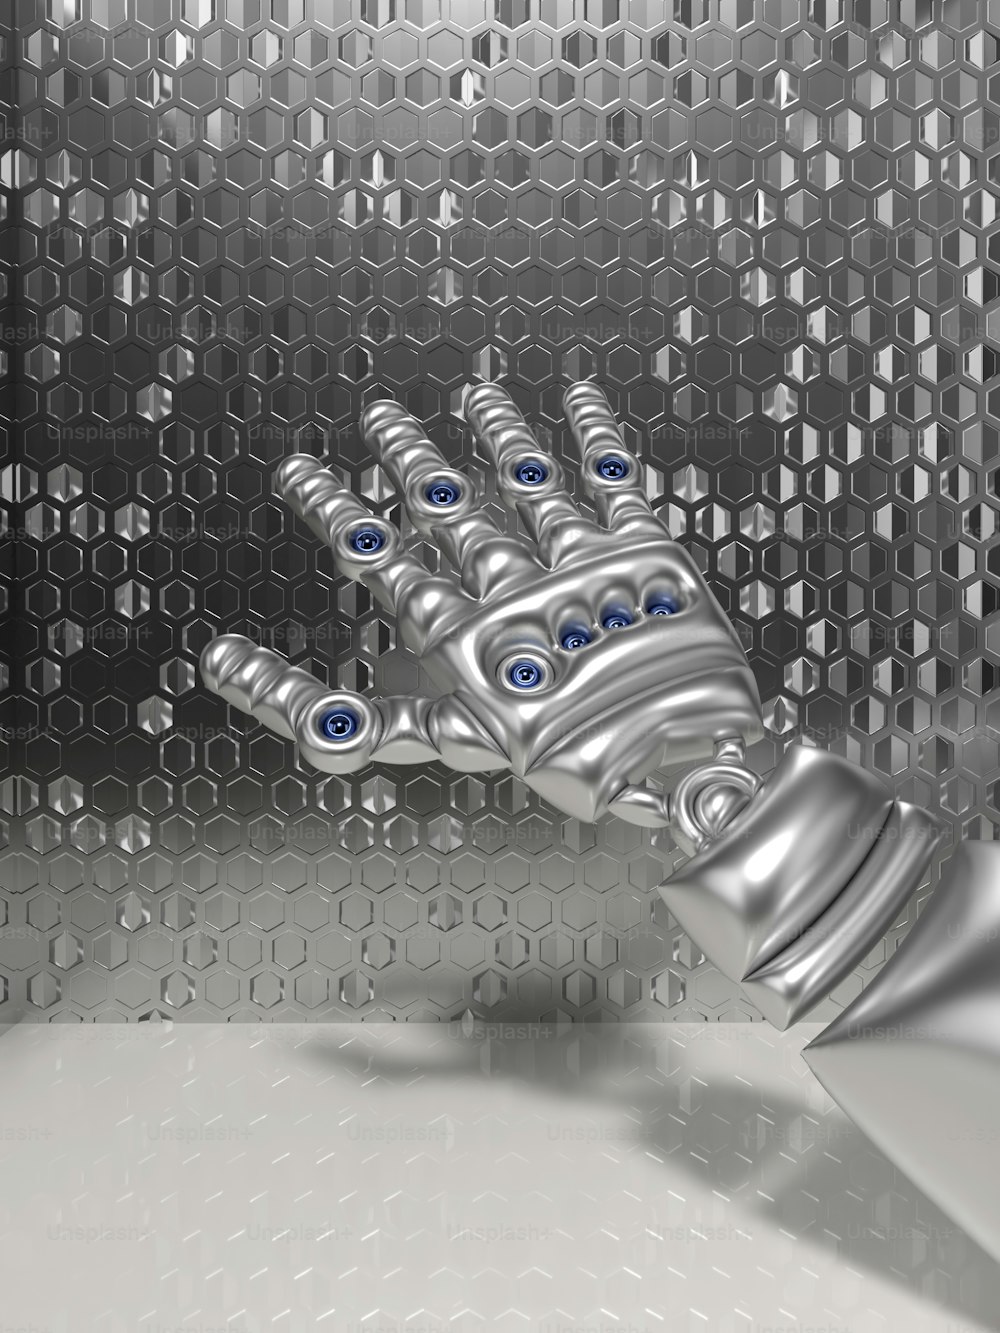 Una mano robótica con ojos azules se muestra frente a un fondo metálico